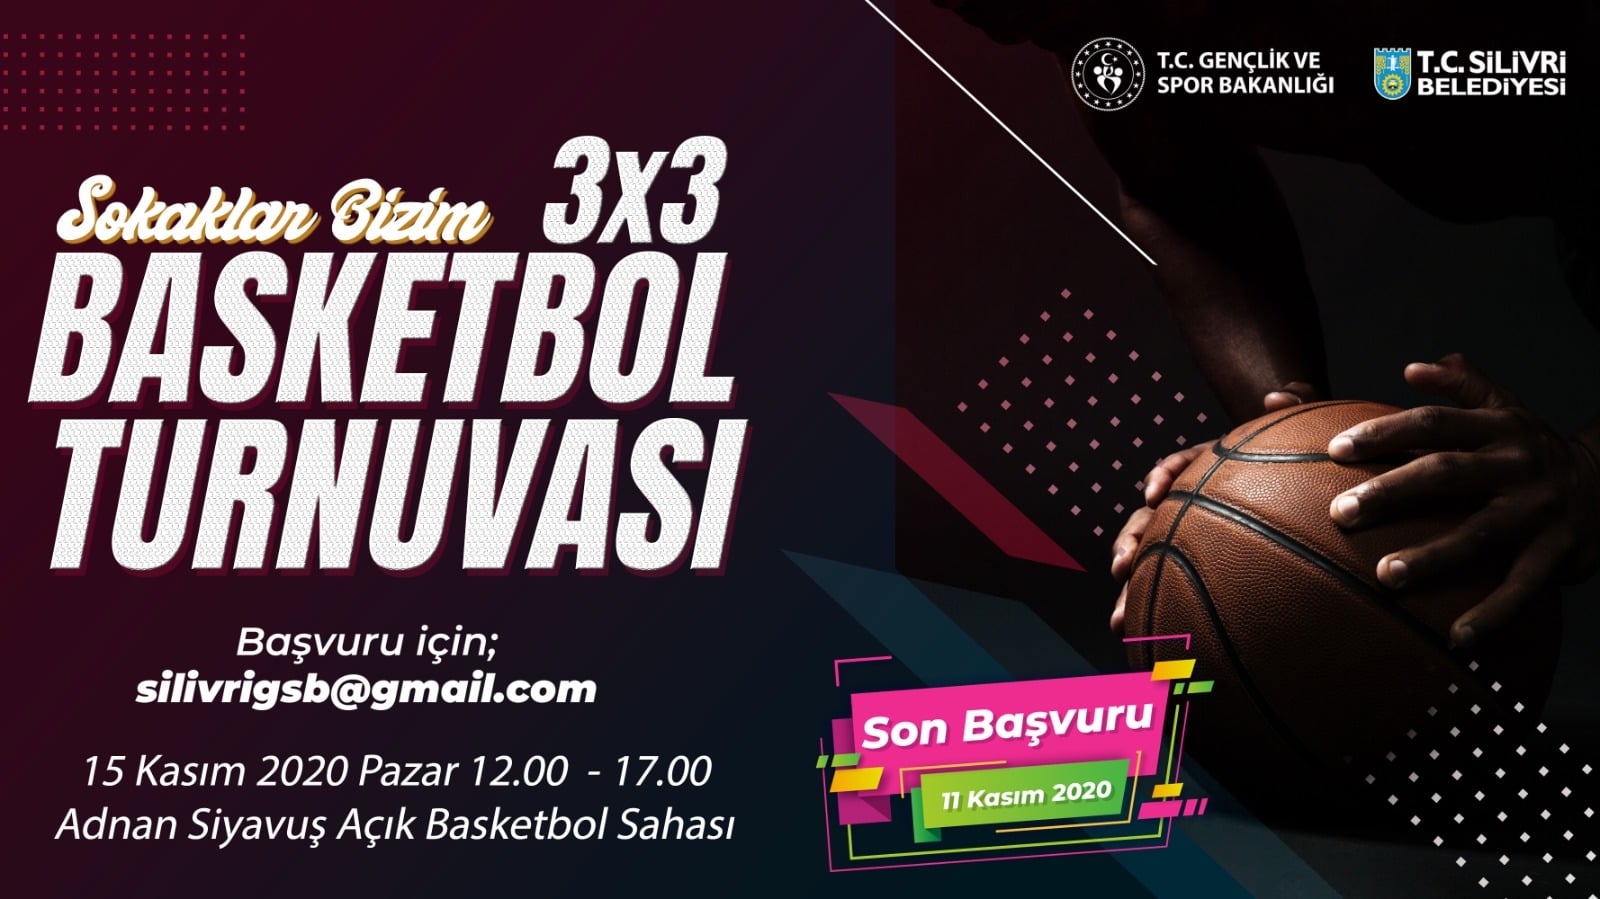 Sokaklar Bizim 3x3 Basketbol Turnuvası Silivri'de Yapılacak